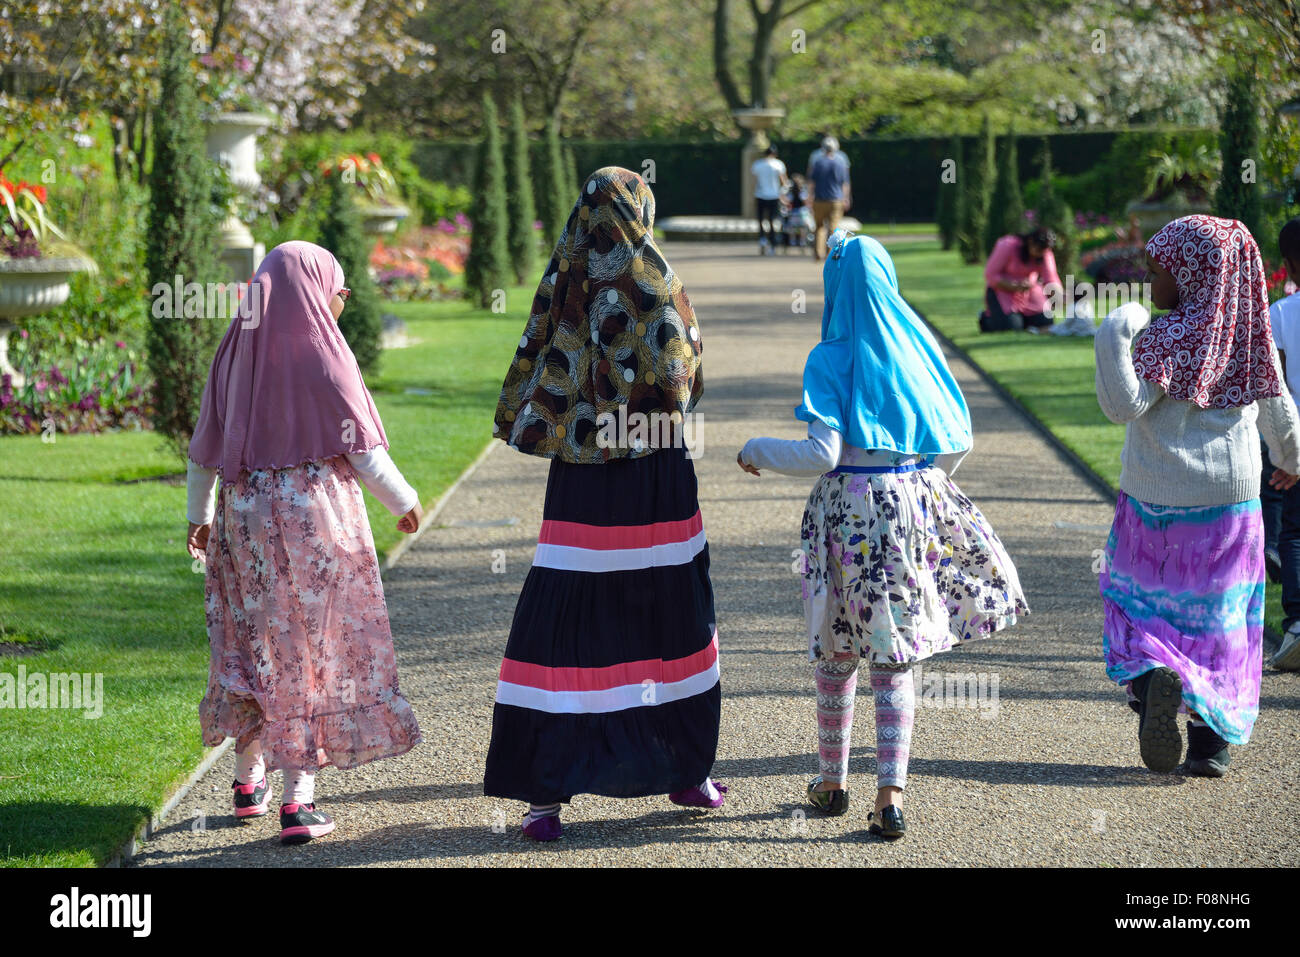 Les jeunes filles musulmanes à l'école Queen Mary's Gardens, Regent's Park, London Borough of Camden, Londres, Angleterre, Royaume-Uni Banque D'Images